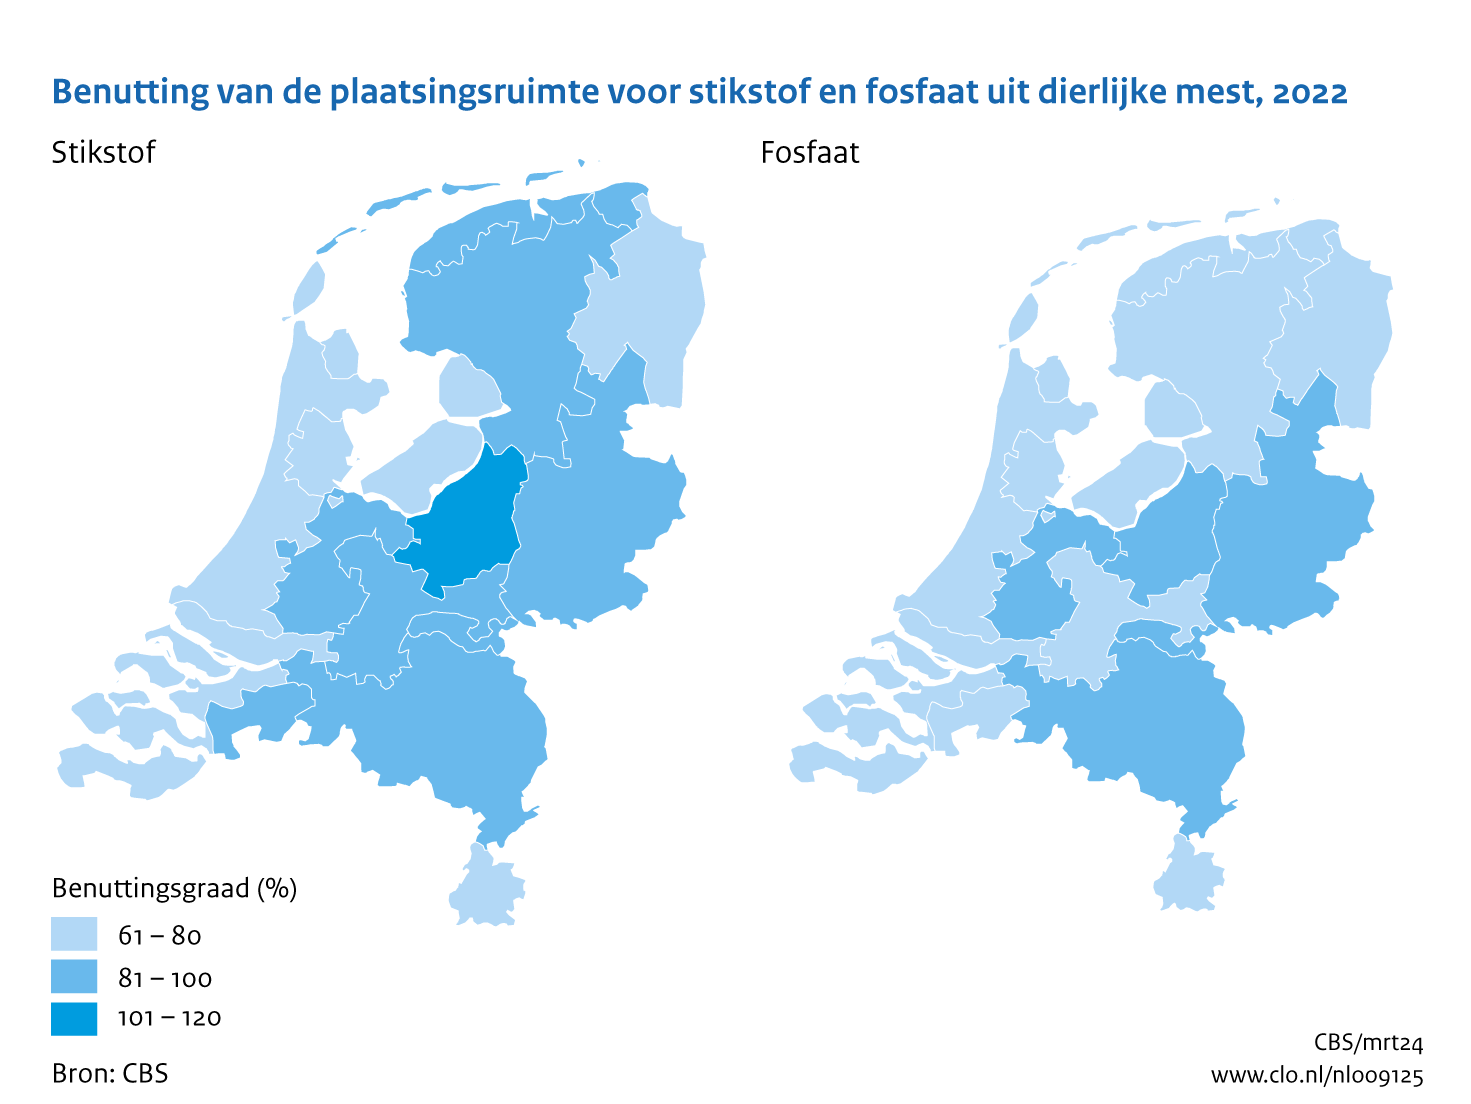 Twee kaarten met de 14 landbouwgebruiksgebieden in Nederland. De linkerkaart geeft de benuttingsgraad van stikstof weer en de rechterkaart de benuttingsgraad van fosfaat. De hoogste benuttingsgraad in 2022 van zowel stikstof als fosfaat vindt plaats in de veehouderijgebieden